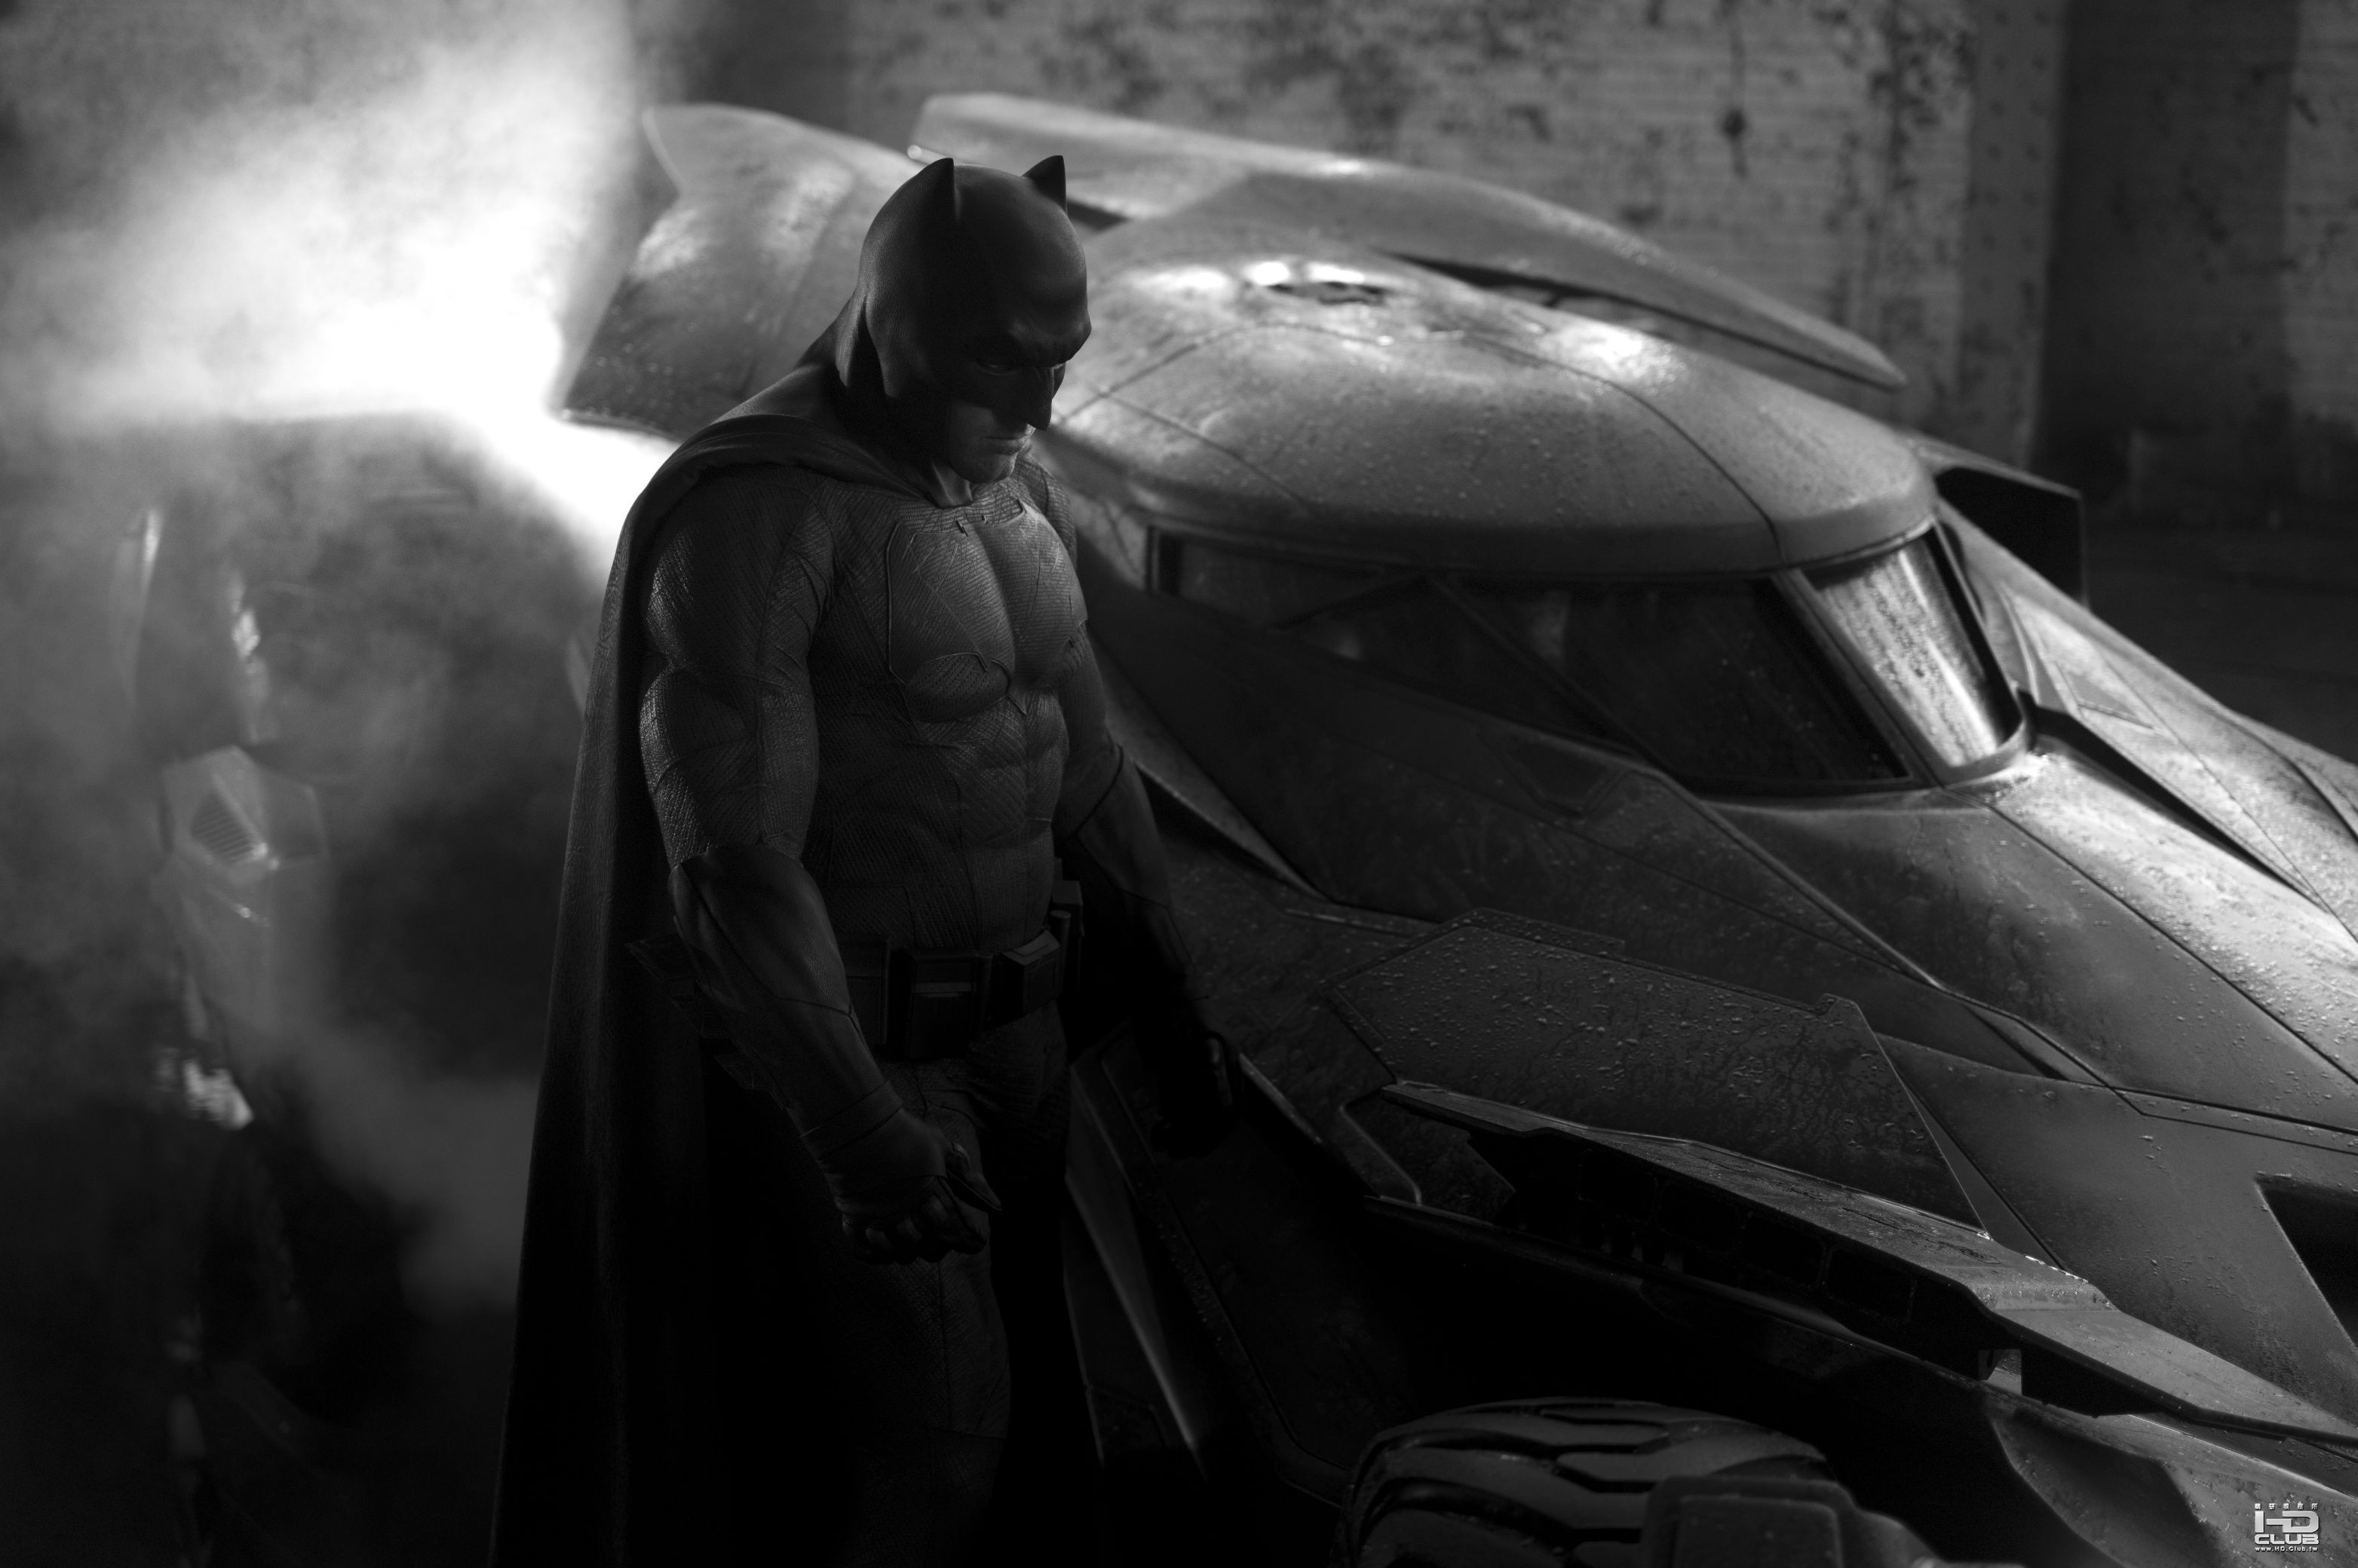 Batman-Affleck-Batman-new-Batmobile.jpg